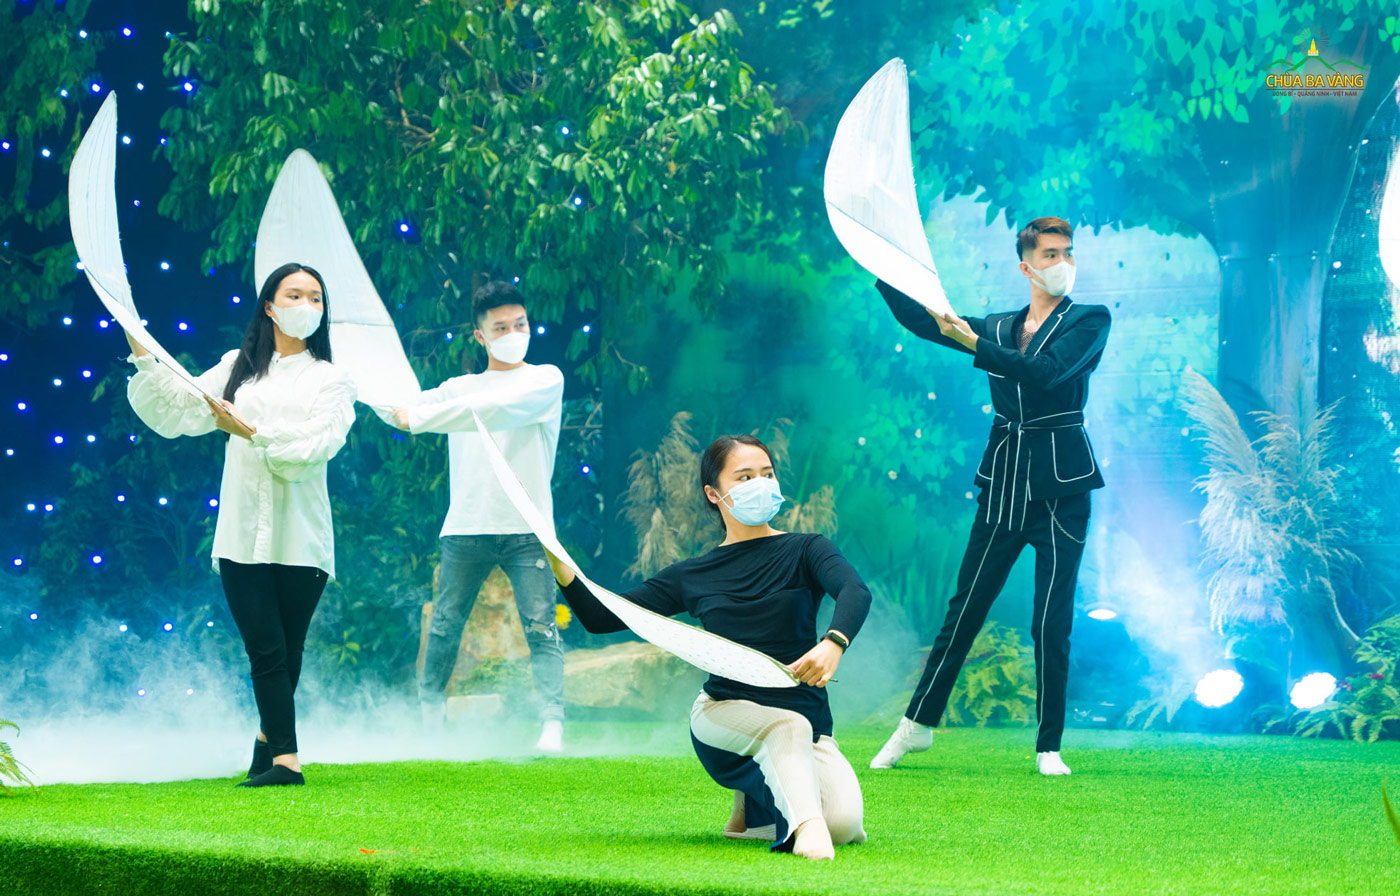 Hình ảnh các vũ công tập luyện cho chương trình văn nghệ kỷ niệm ngày Thái tử Tất Đạt Đa xuất gia